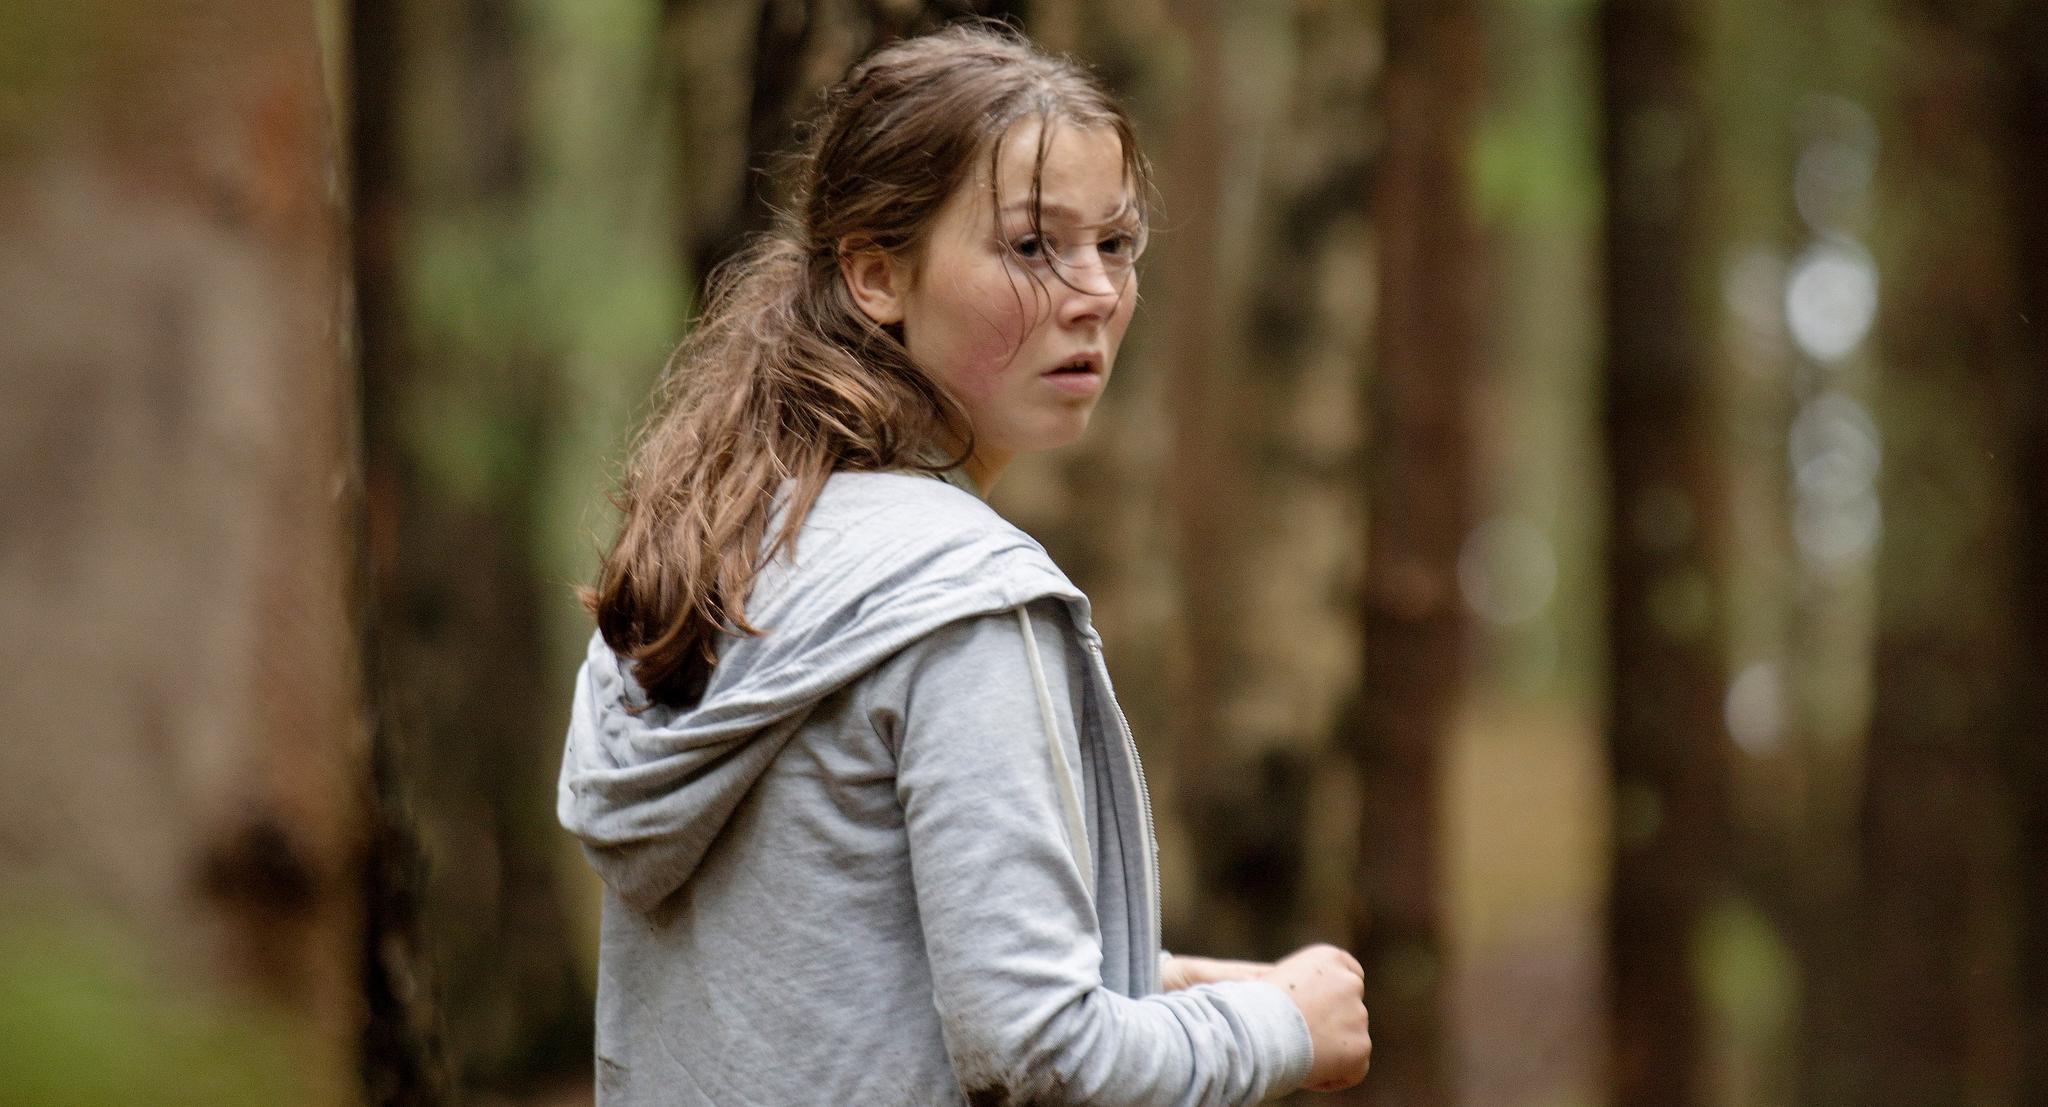 Skuespiller Andrea Berntzen har hovedrollen i filmen «Utøya 22. juli». Alle må se filmen, mener kronikkforfatteren: Det inkluderer Breivik selv og andre ekstremistiske miljøer i dagens Norge.